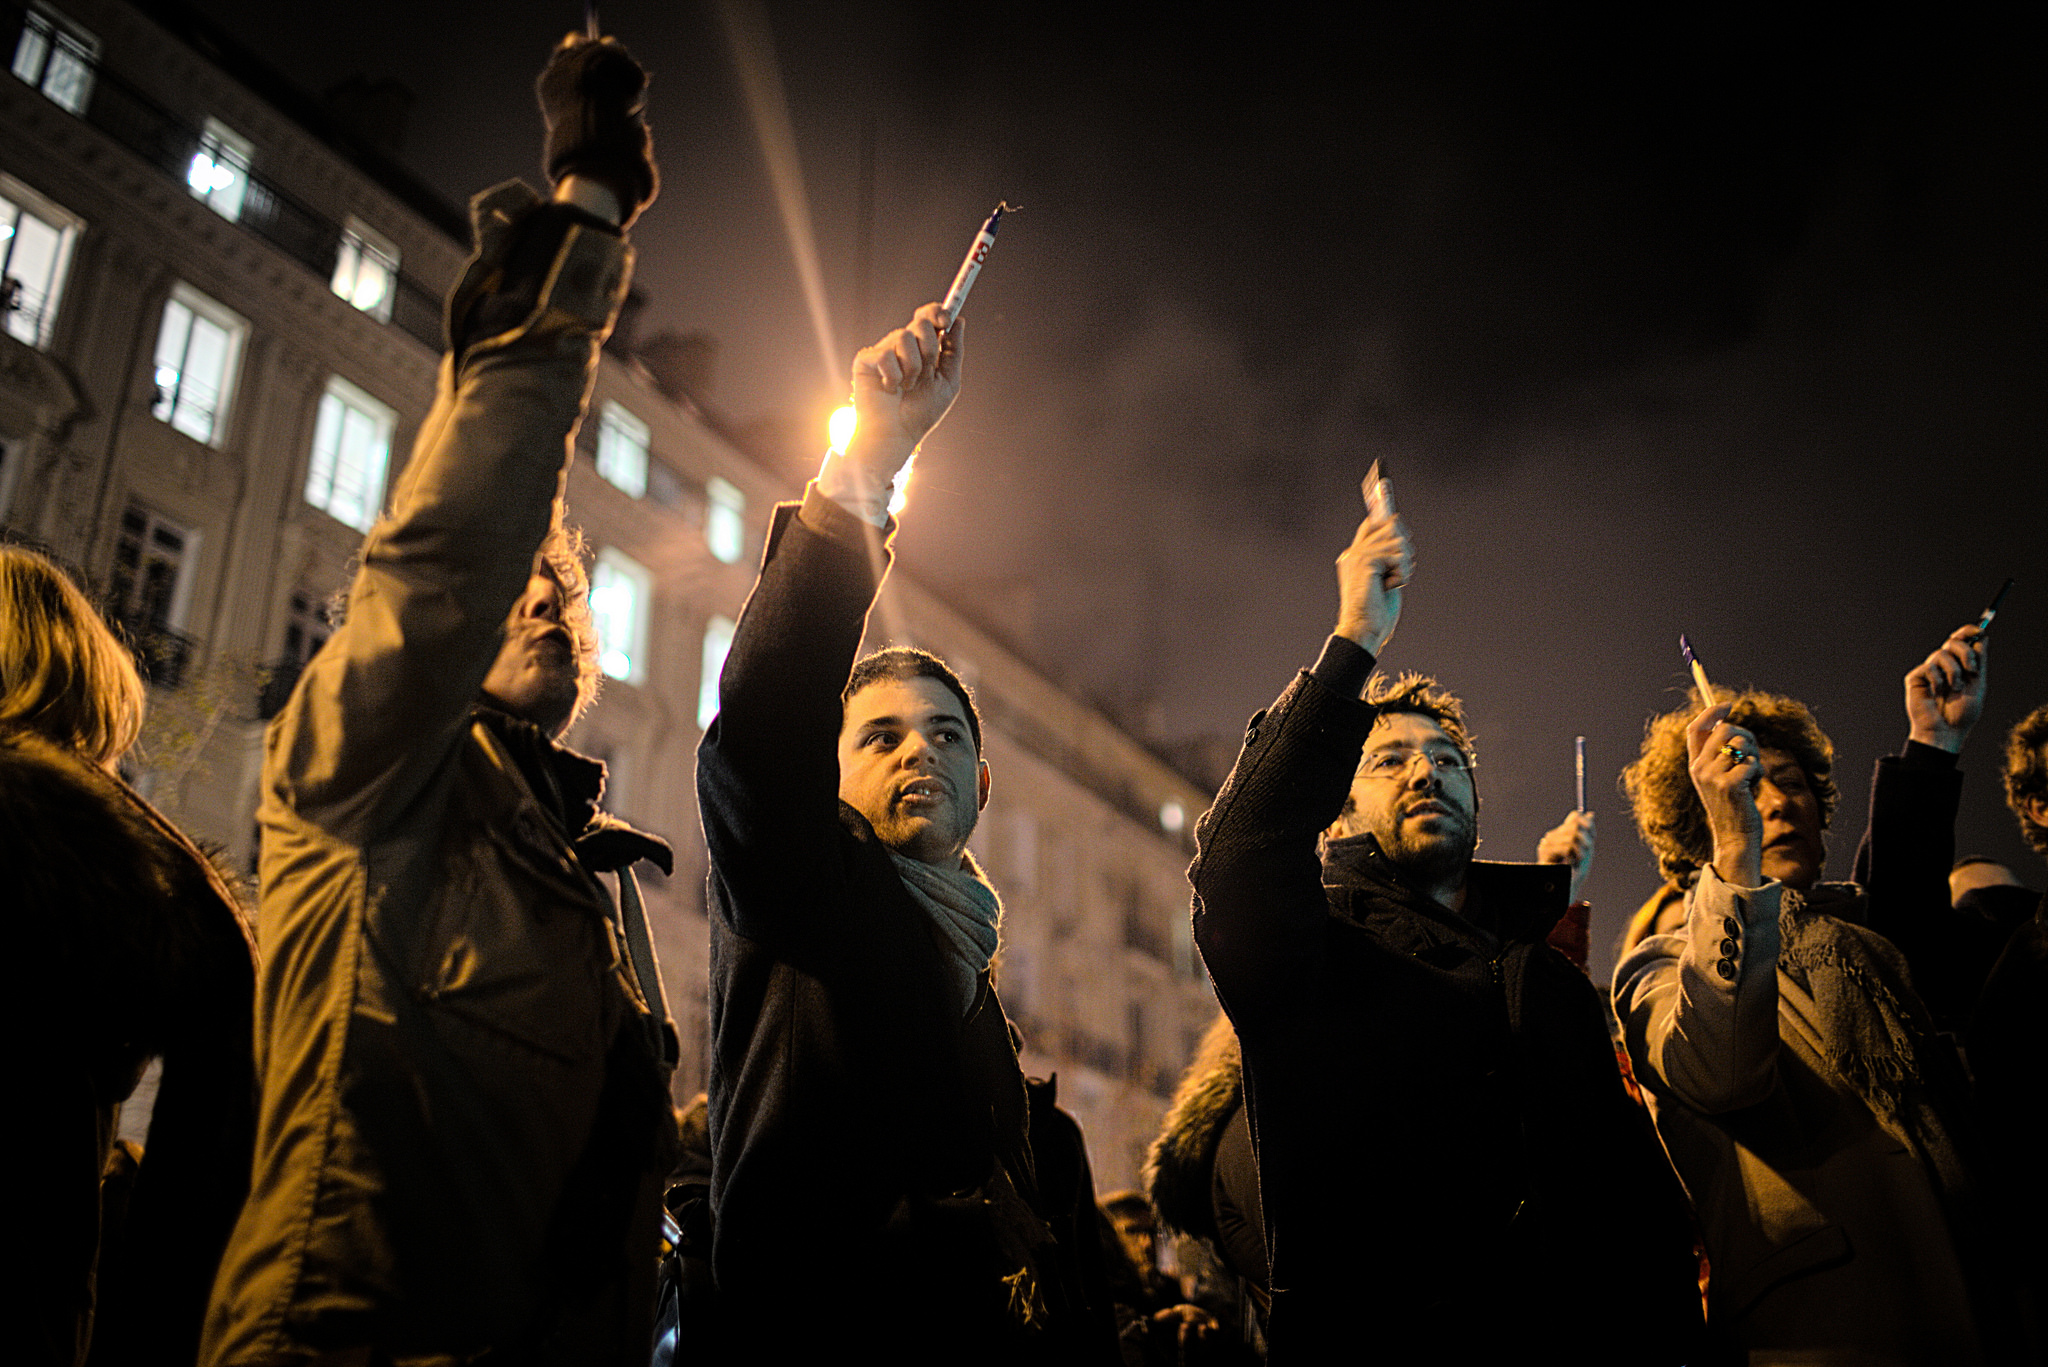 Charlie Hebdo protestors raise pens in solidarity.